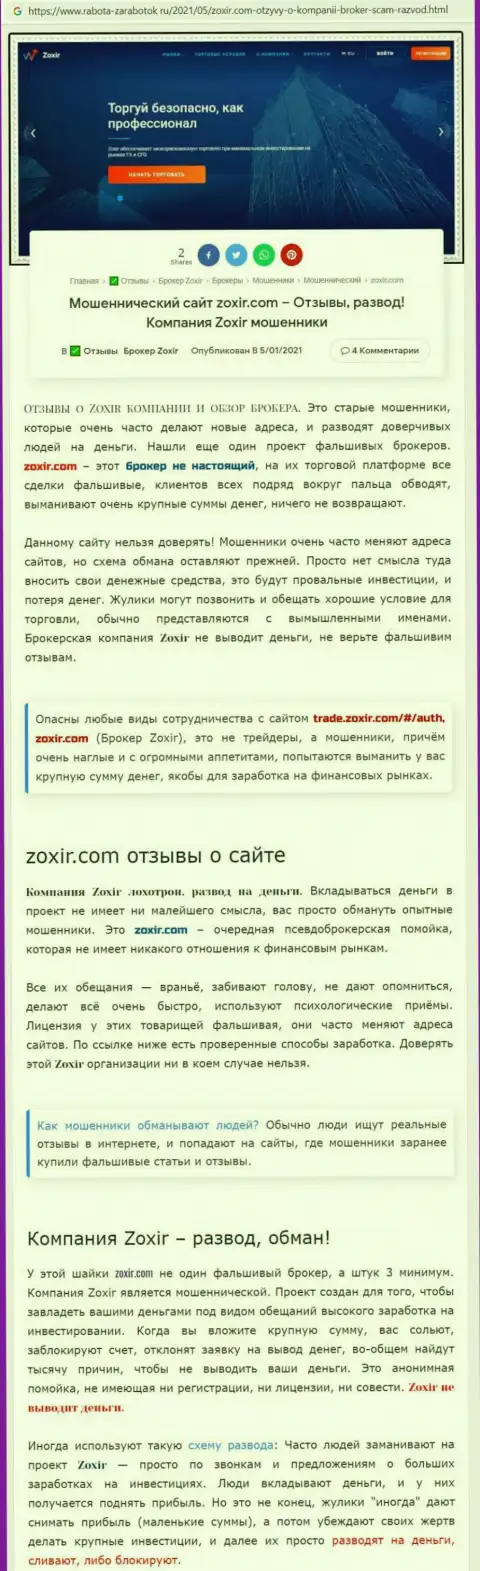 Создатель публикации советует не отправлять средства в Zoxir Com - ОТОЖМУТ !